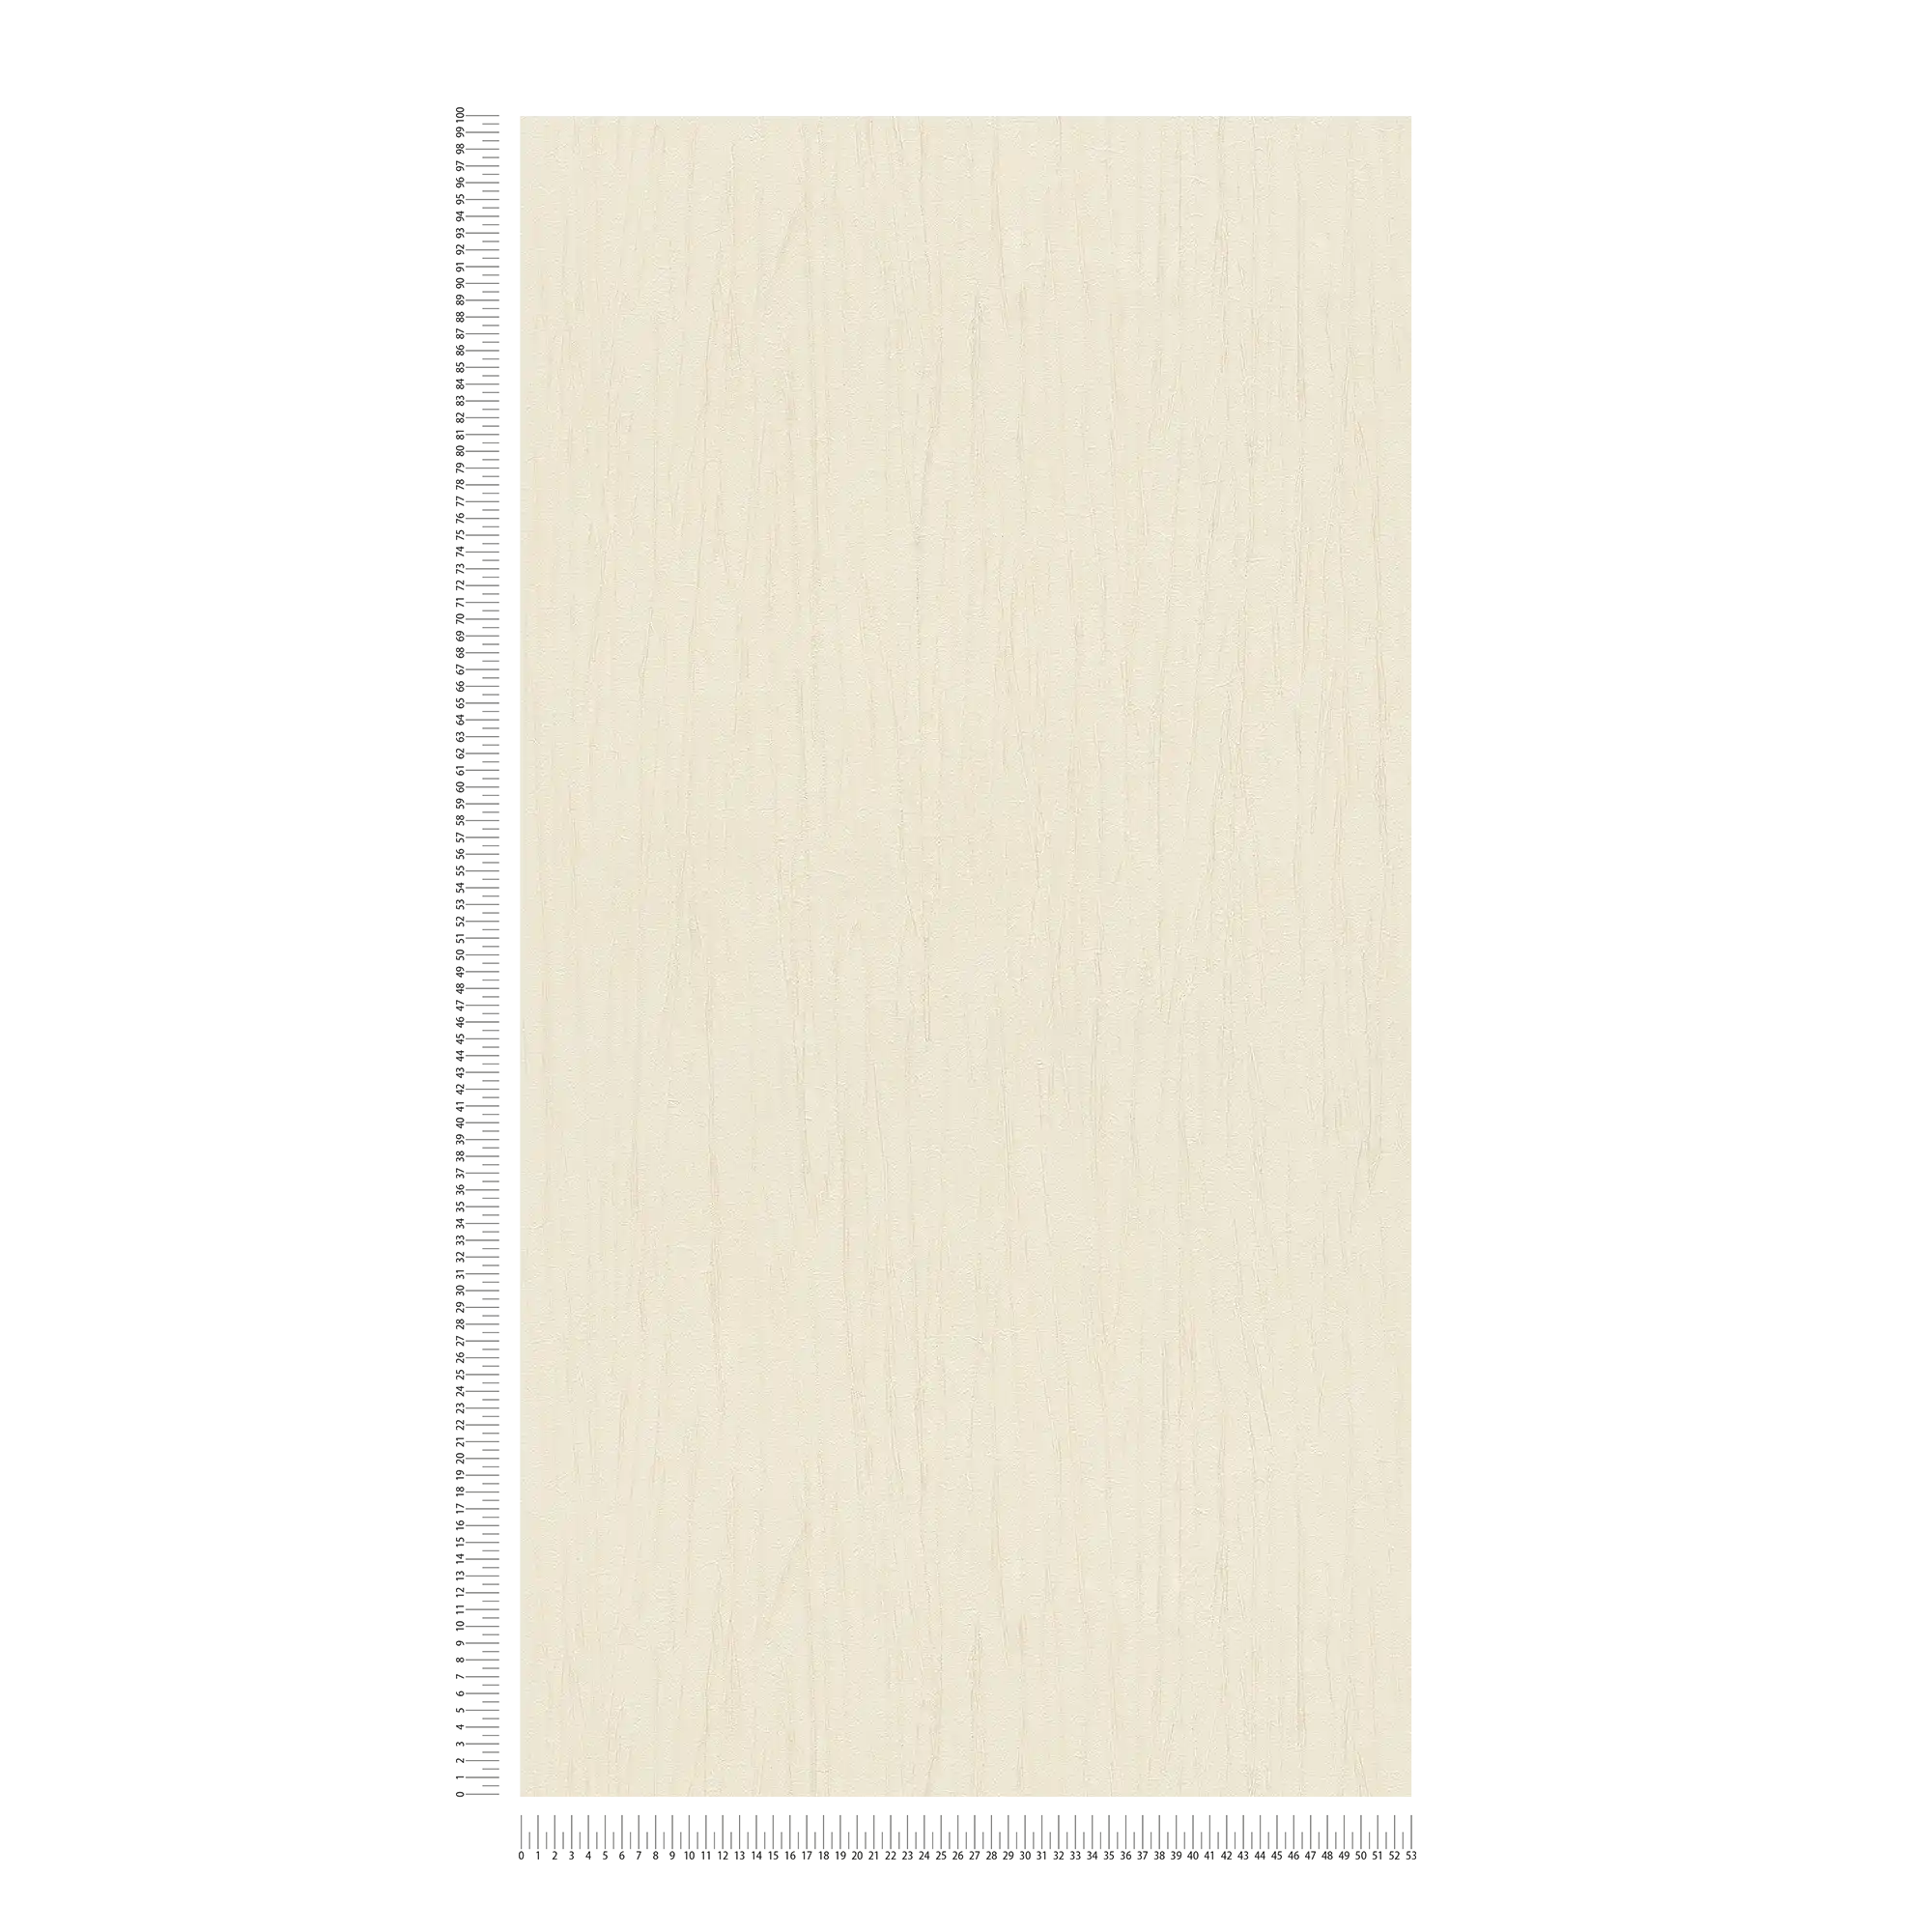             Carta da parati crush structure & metallic effect - beige, crema
        